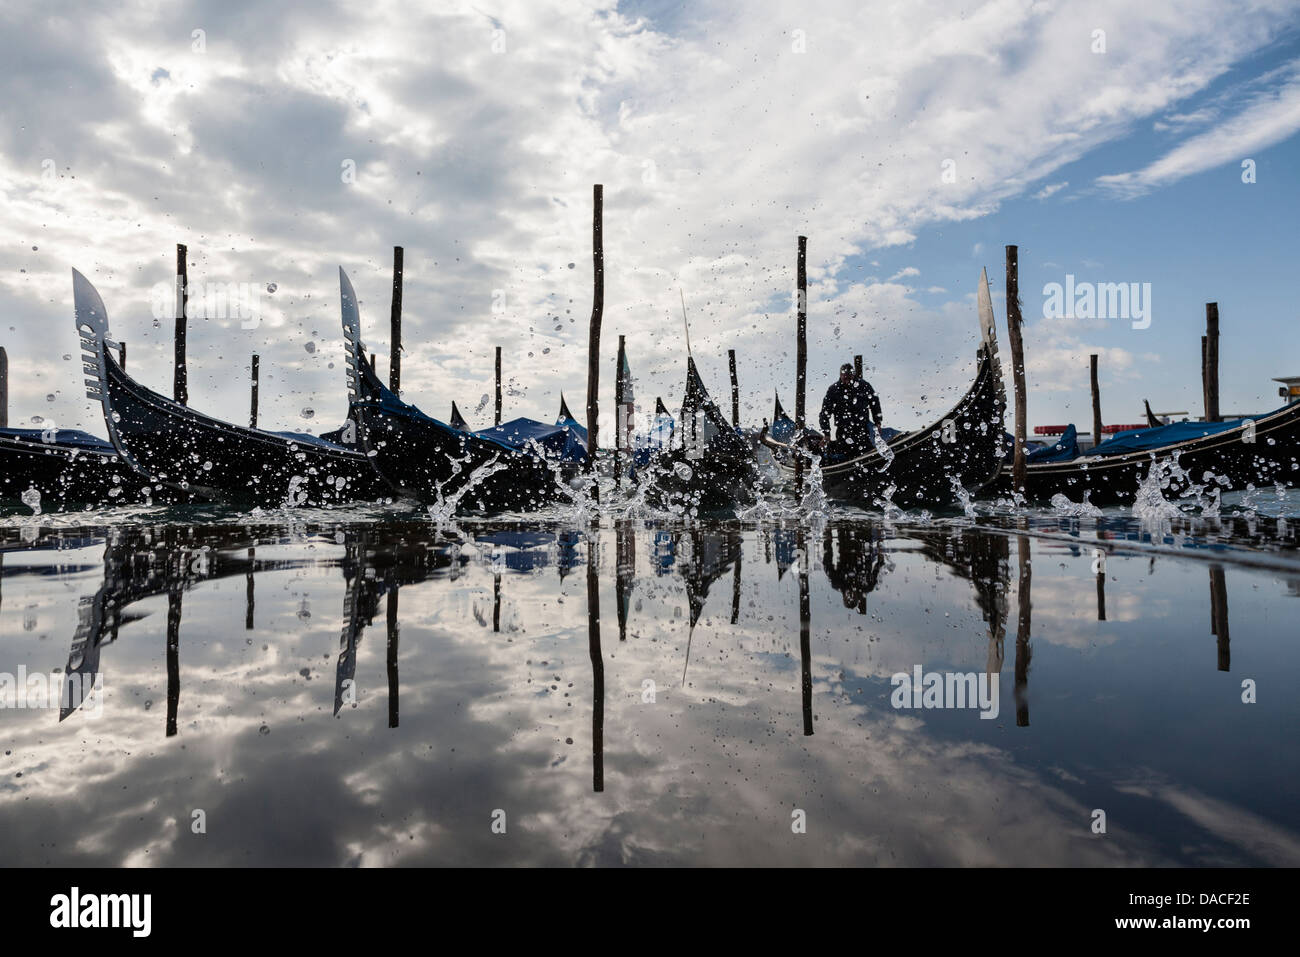 Réflexion avec les gondoles et les éclaboussures d'eau, Venise, Italie Banque D'Images